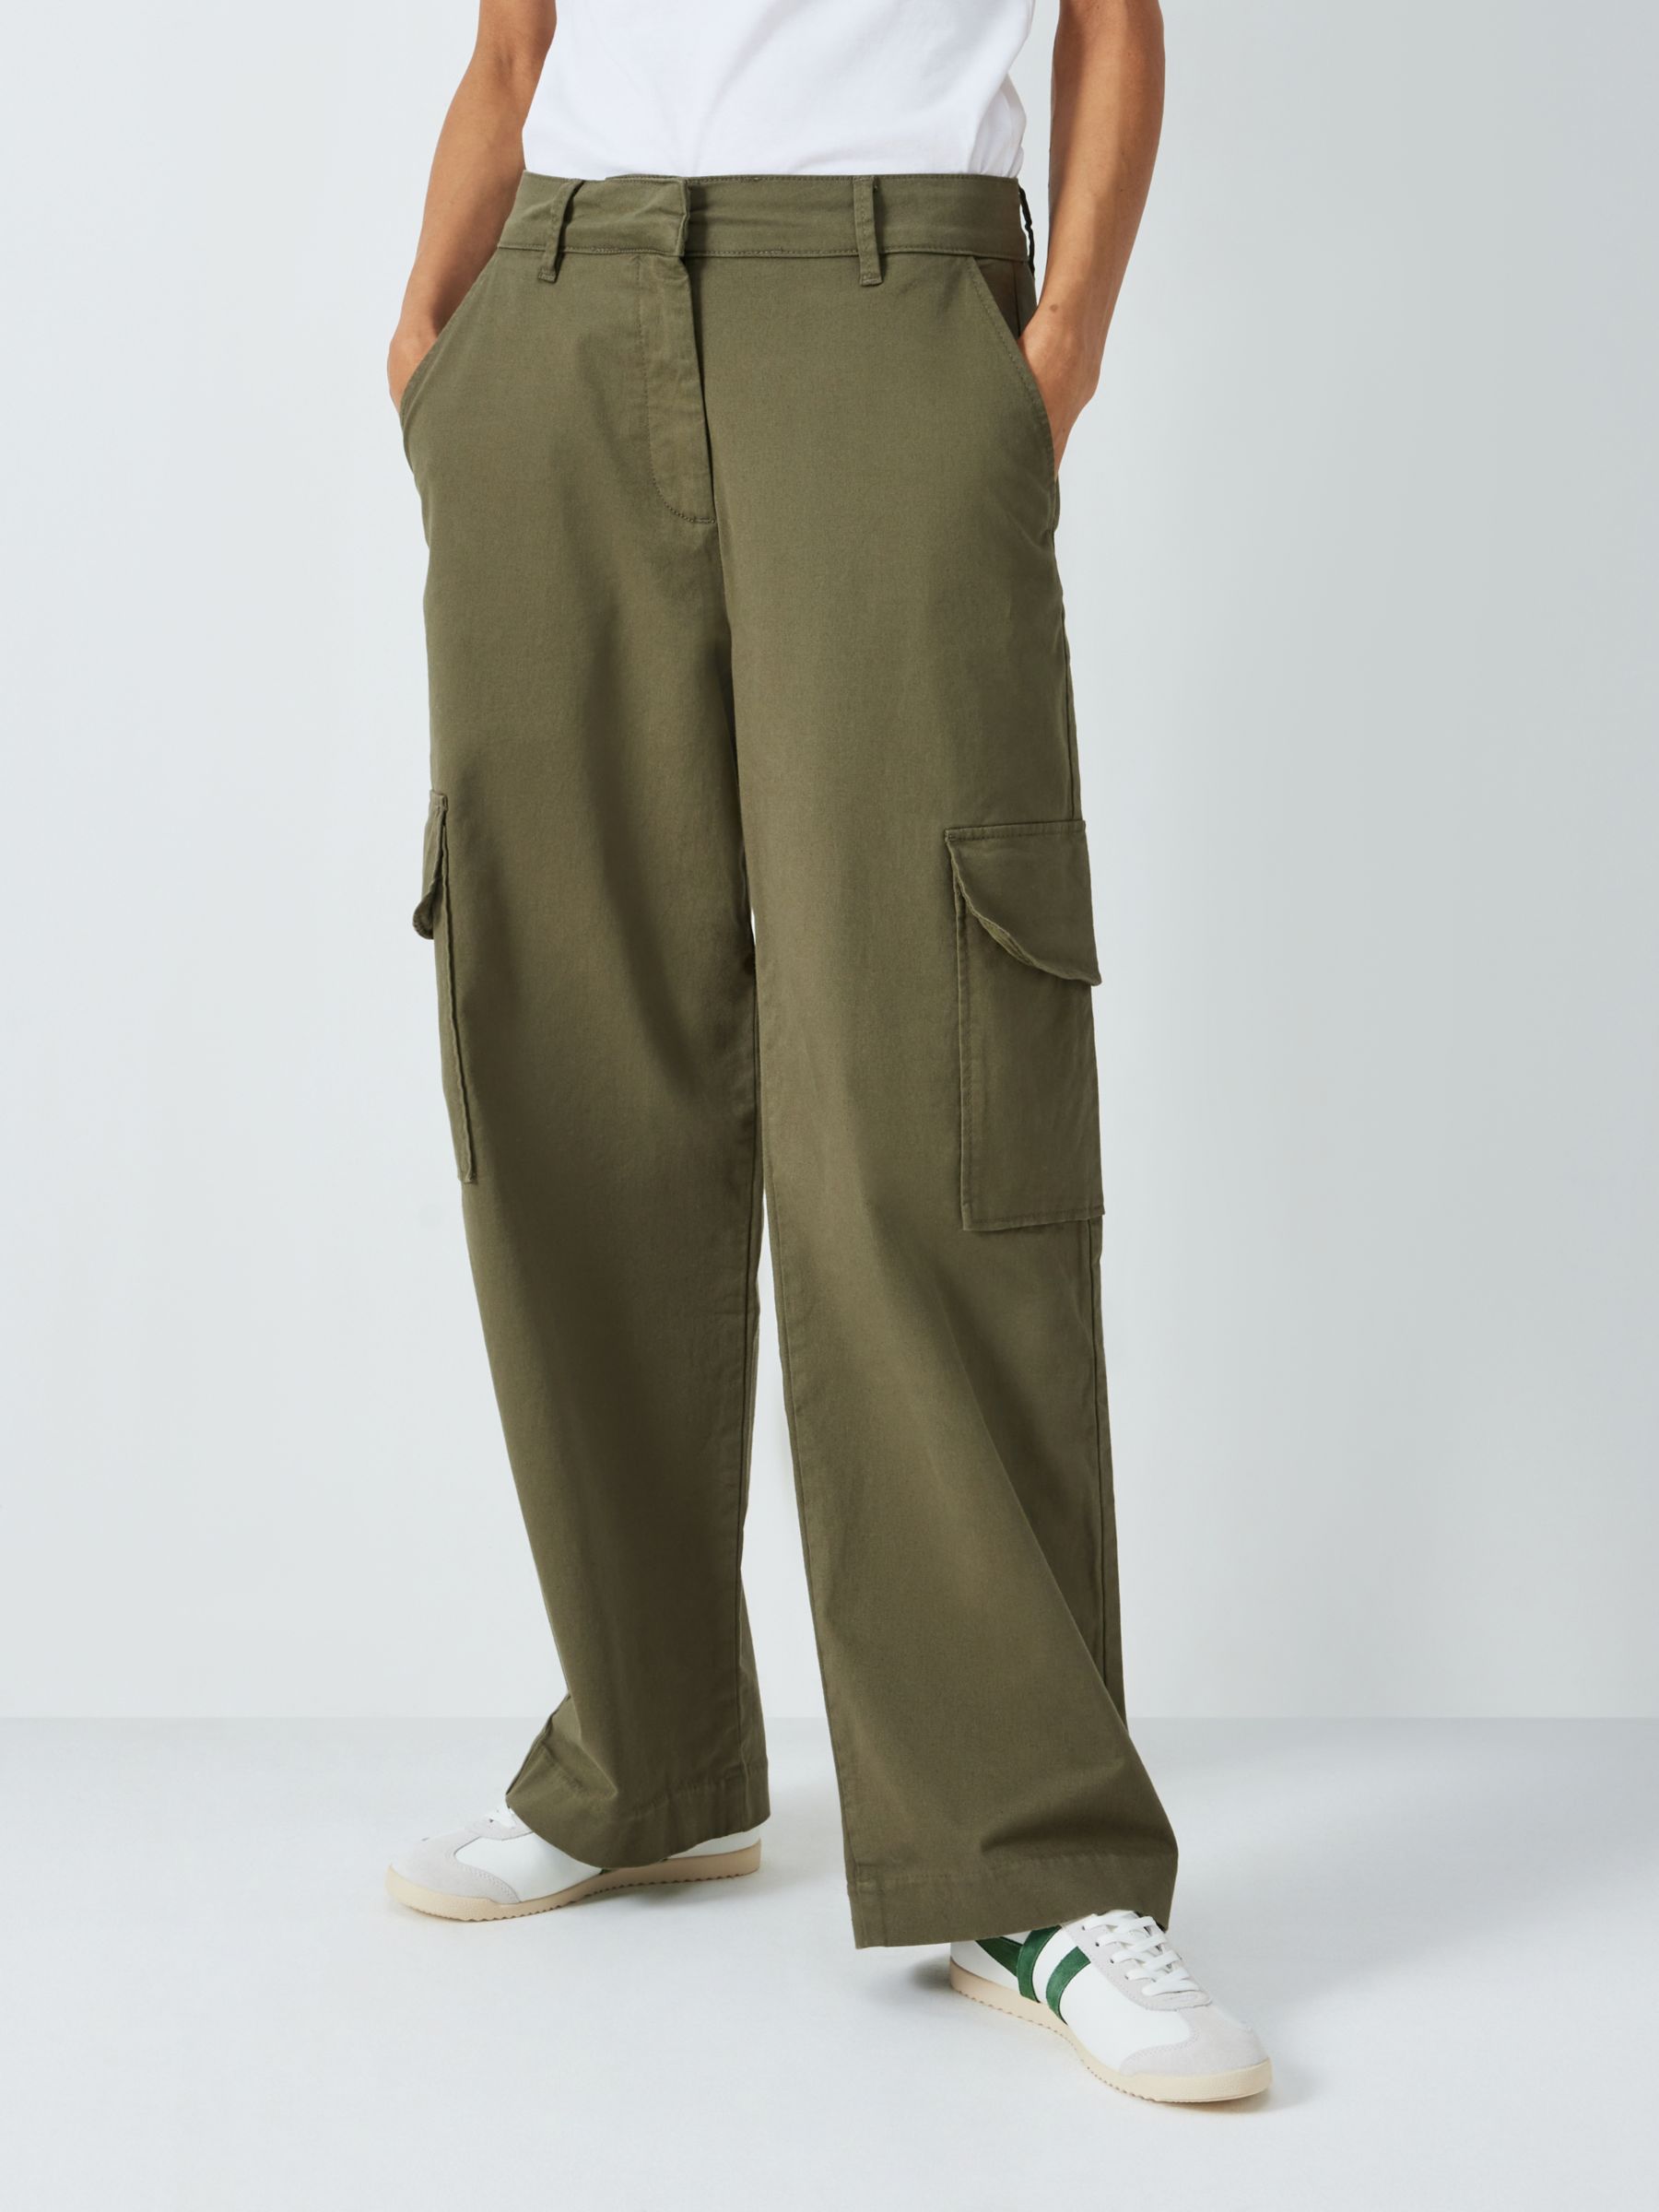 John Lewis Cargo Trousers, Khaki, 18